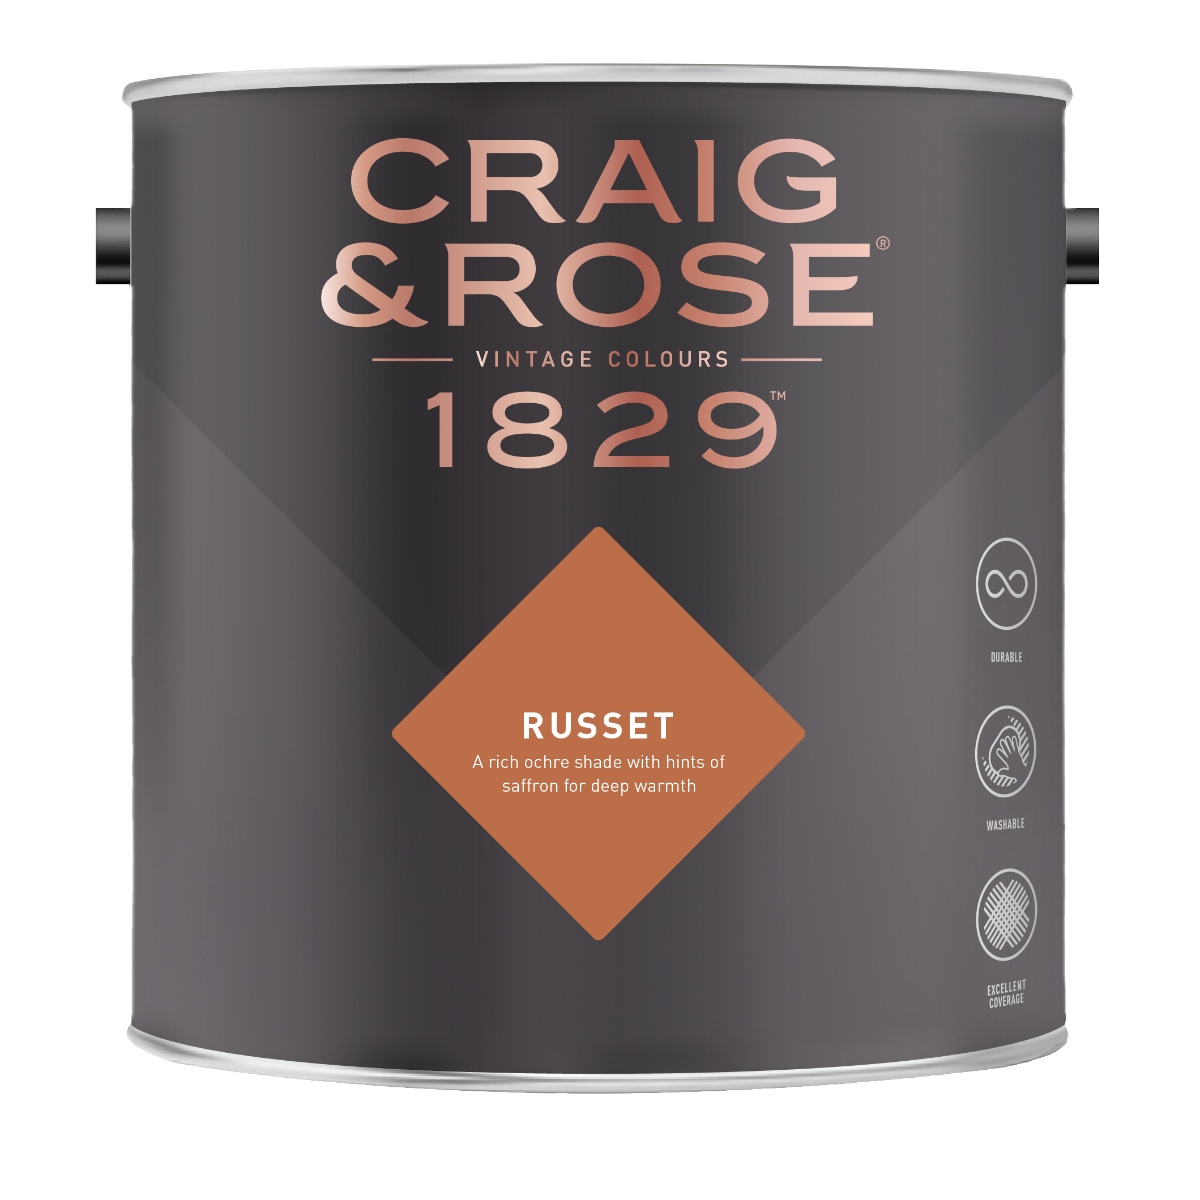 Craig & Rose 1829 Russet